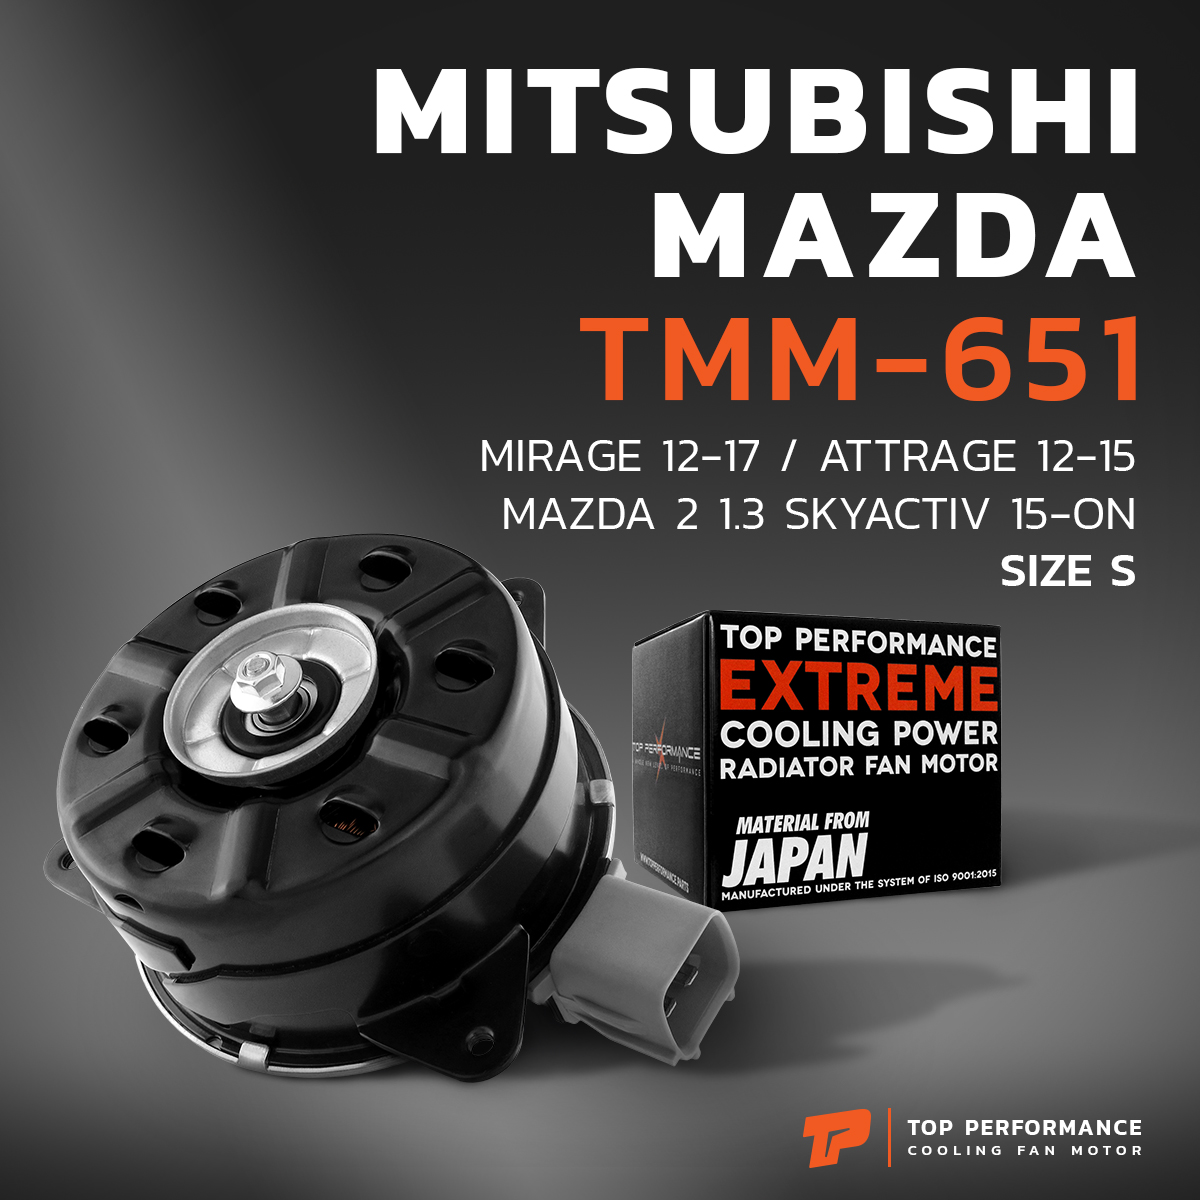 มอเตอร์พัดลม MITSUBISHI MIRAGE / ATTRAGE / MAZDA 2 SKYACTIV ตรงรุ่น - TMM-651 - TOP PERFORMANCE JAPAN - หม้อน้ำ มิราจ มาสด้า 7030